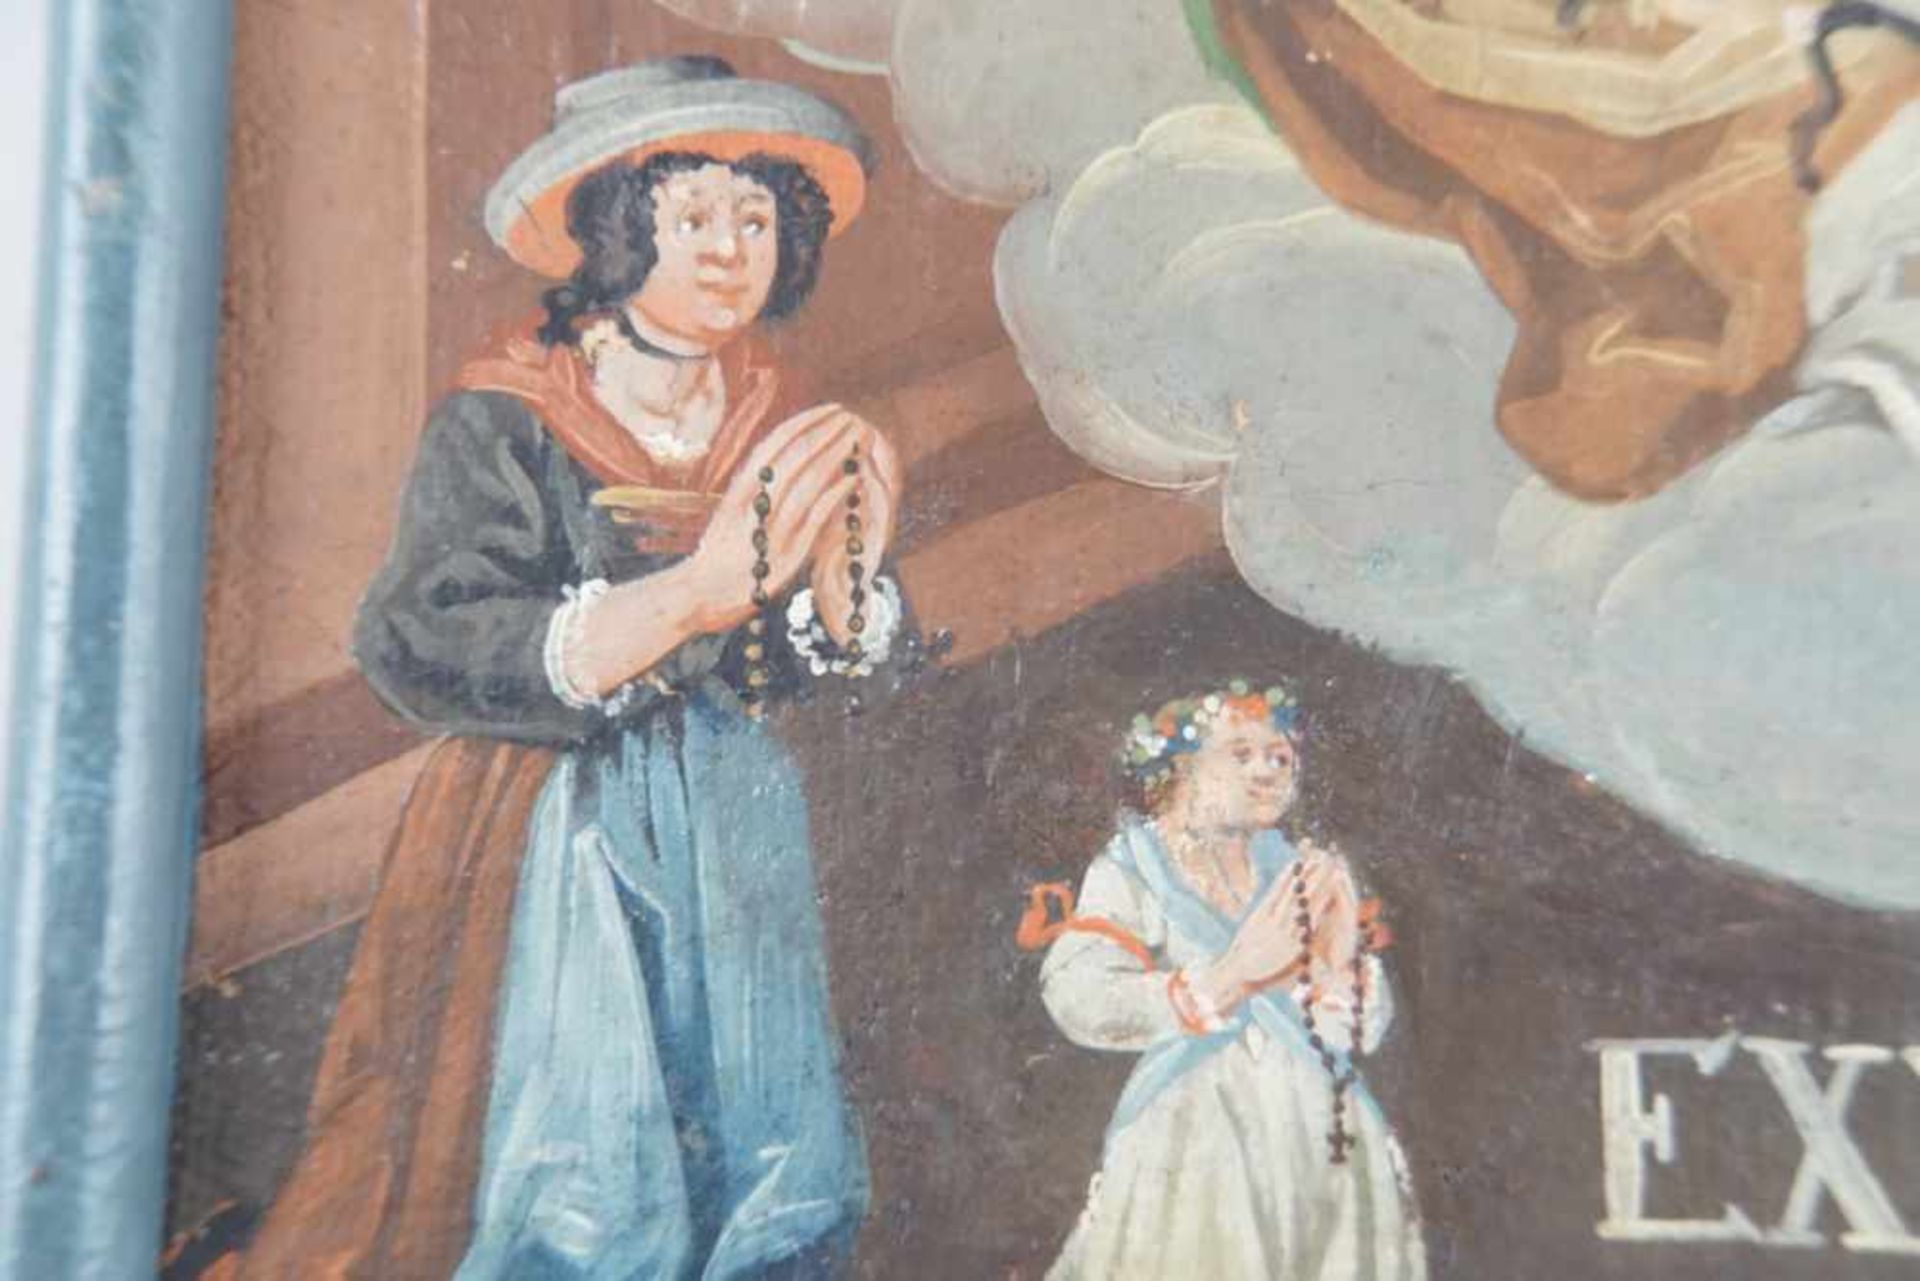 Votivtafel, Öl auf Leinwand, doubliert, gerahmt, datiert 1809, 34x31cm- - -24.00 % buyer's premium - Bild 3 aus 5